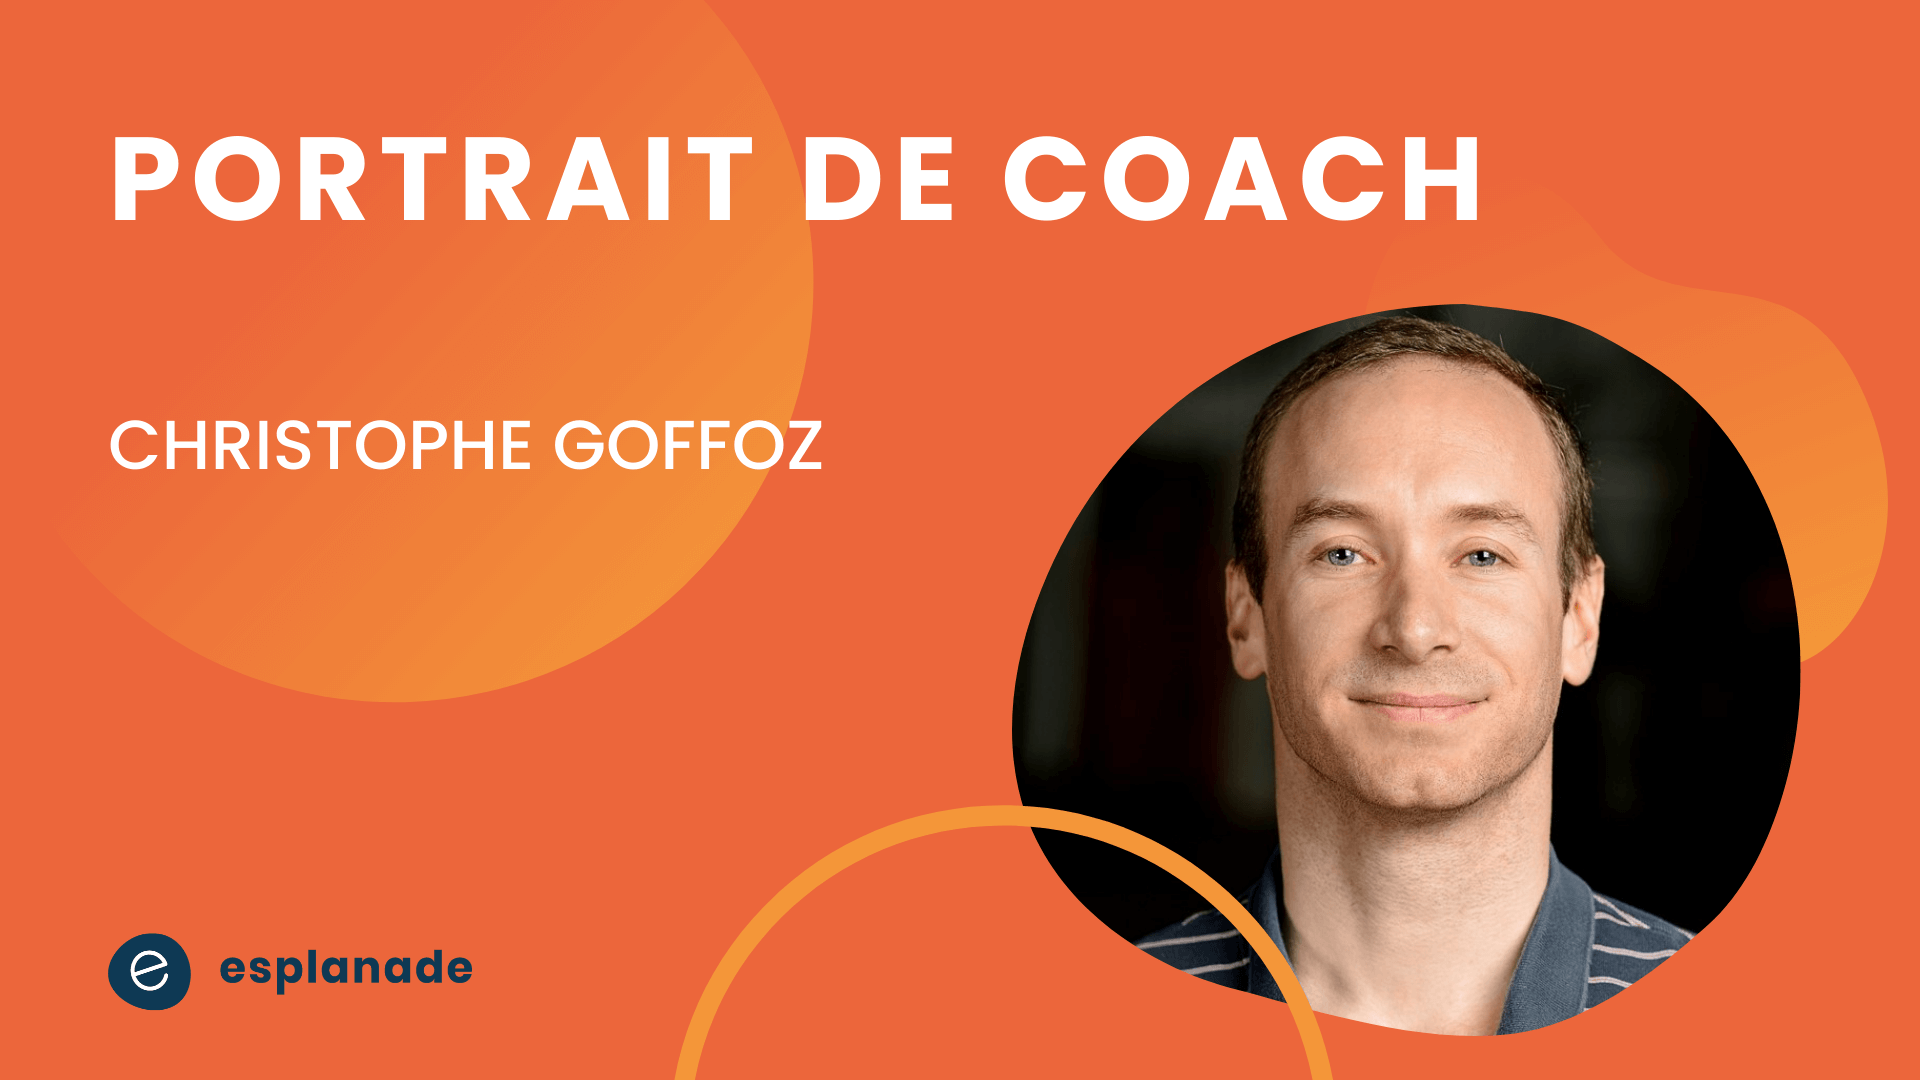 Christophe Goffoz - portrait de coach